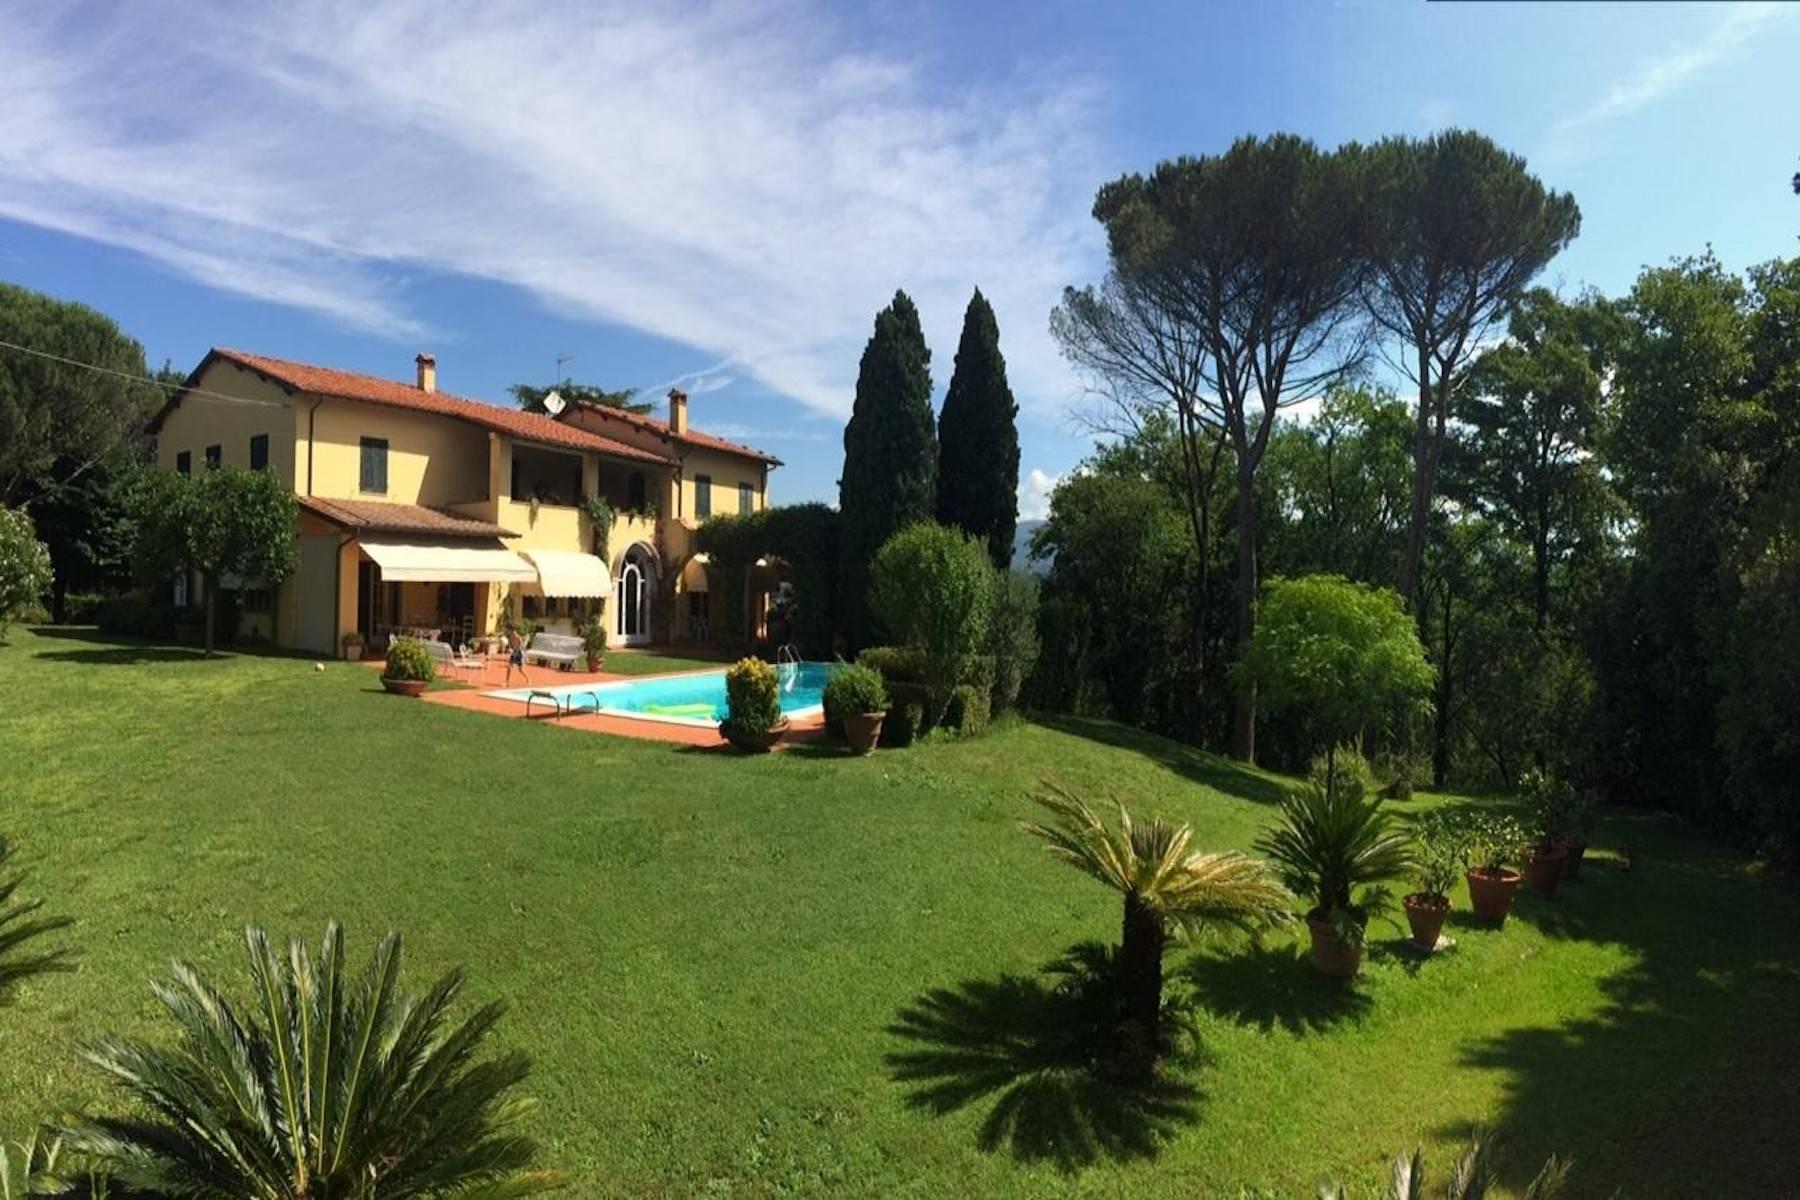 Splendida villa in vendita a pochi minuti dal centro di Lucca - 17